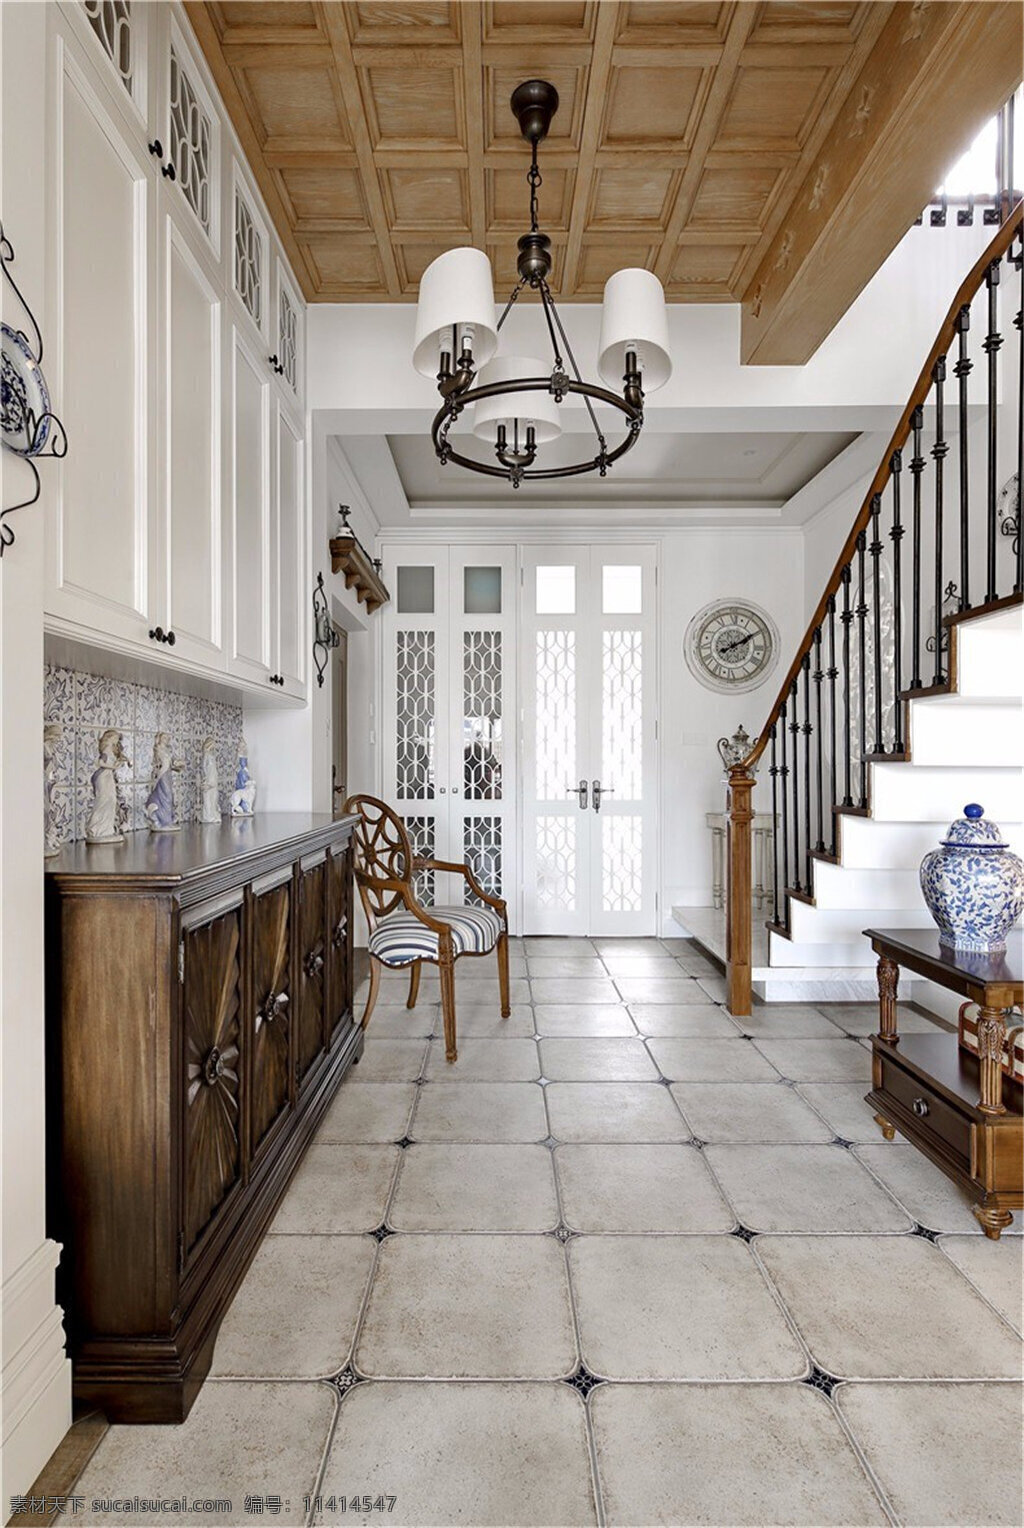 美式 简约 时尚 楼梯 设计图 家居 家居生活 室内设计 装修 室内 家具 装修设计 环境设计 白色